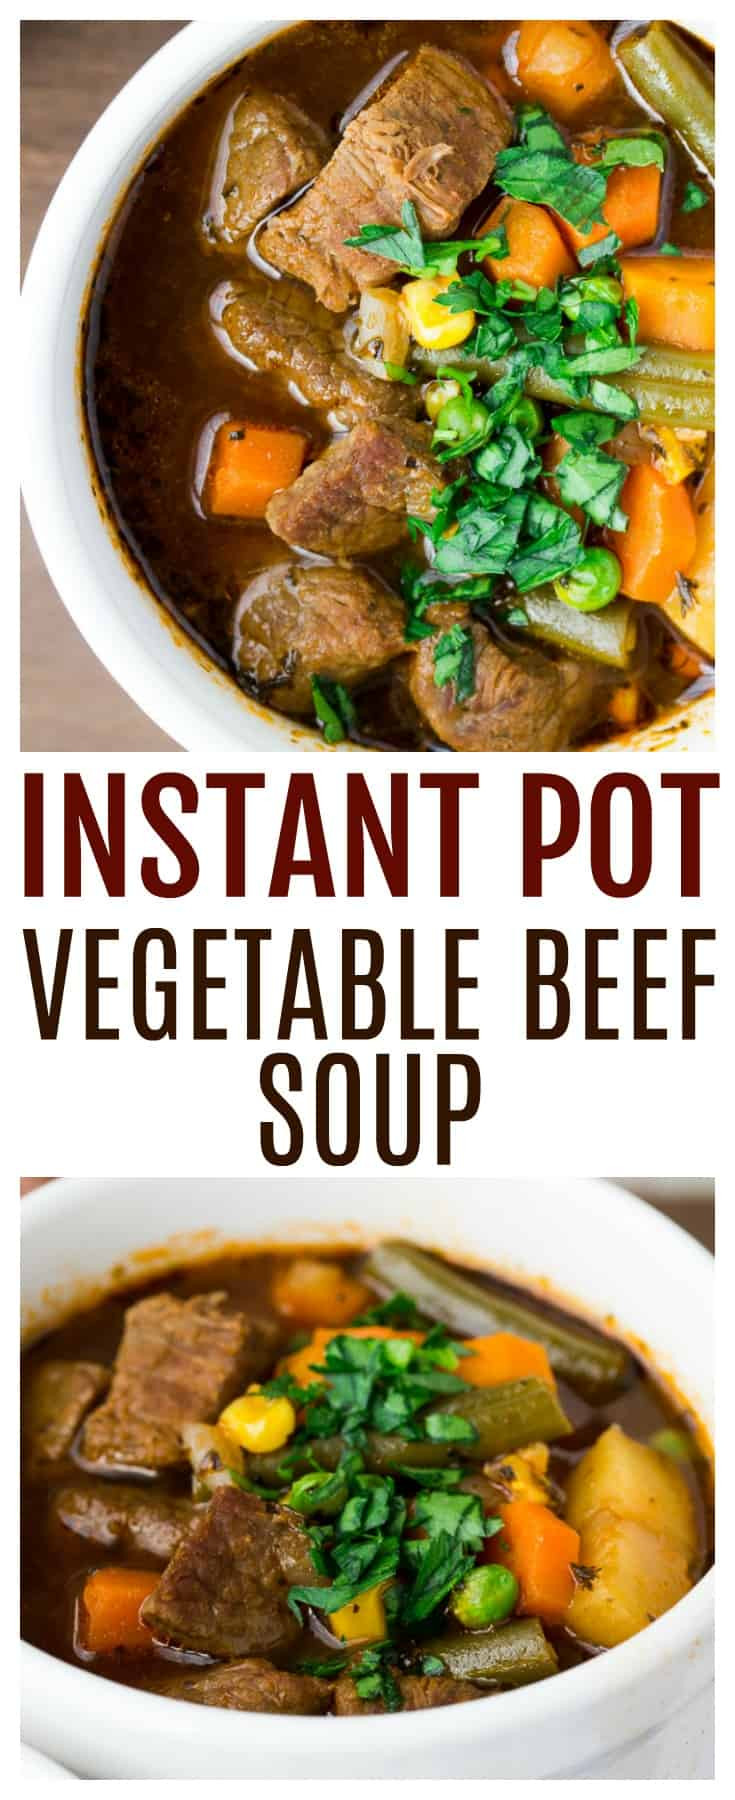 Vegetable Beef Soup Instant Pot
 Instant Pot Ve able Beef Soup Delicious Little Bites